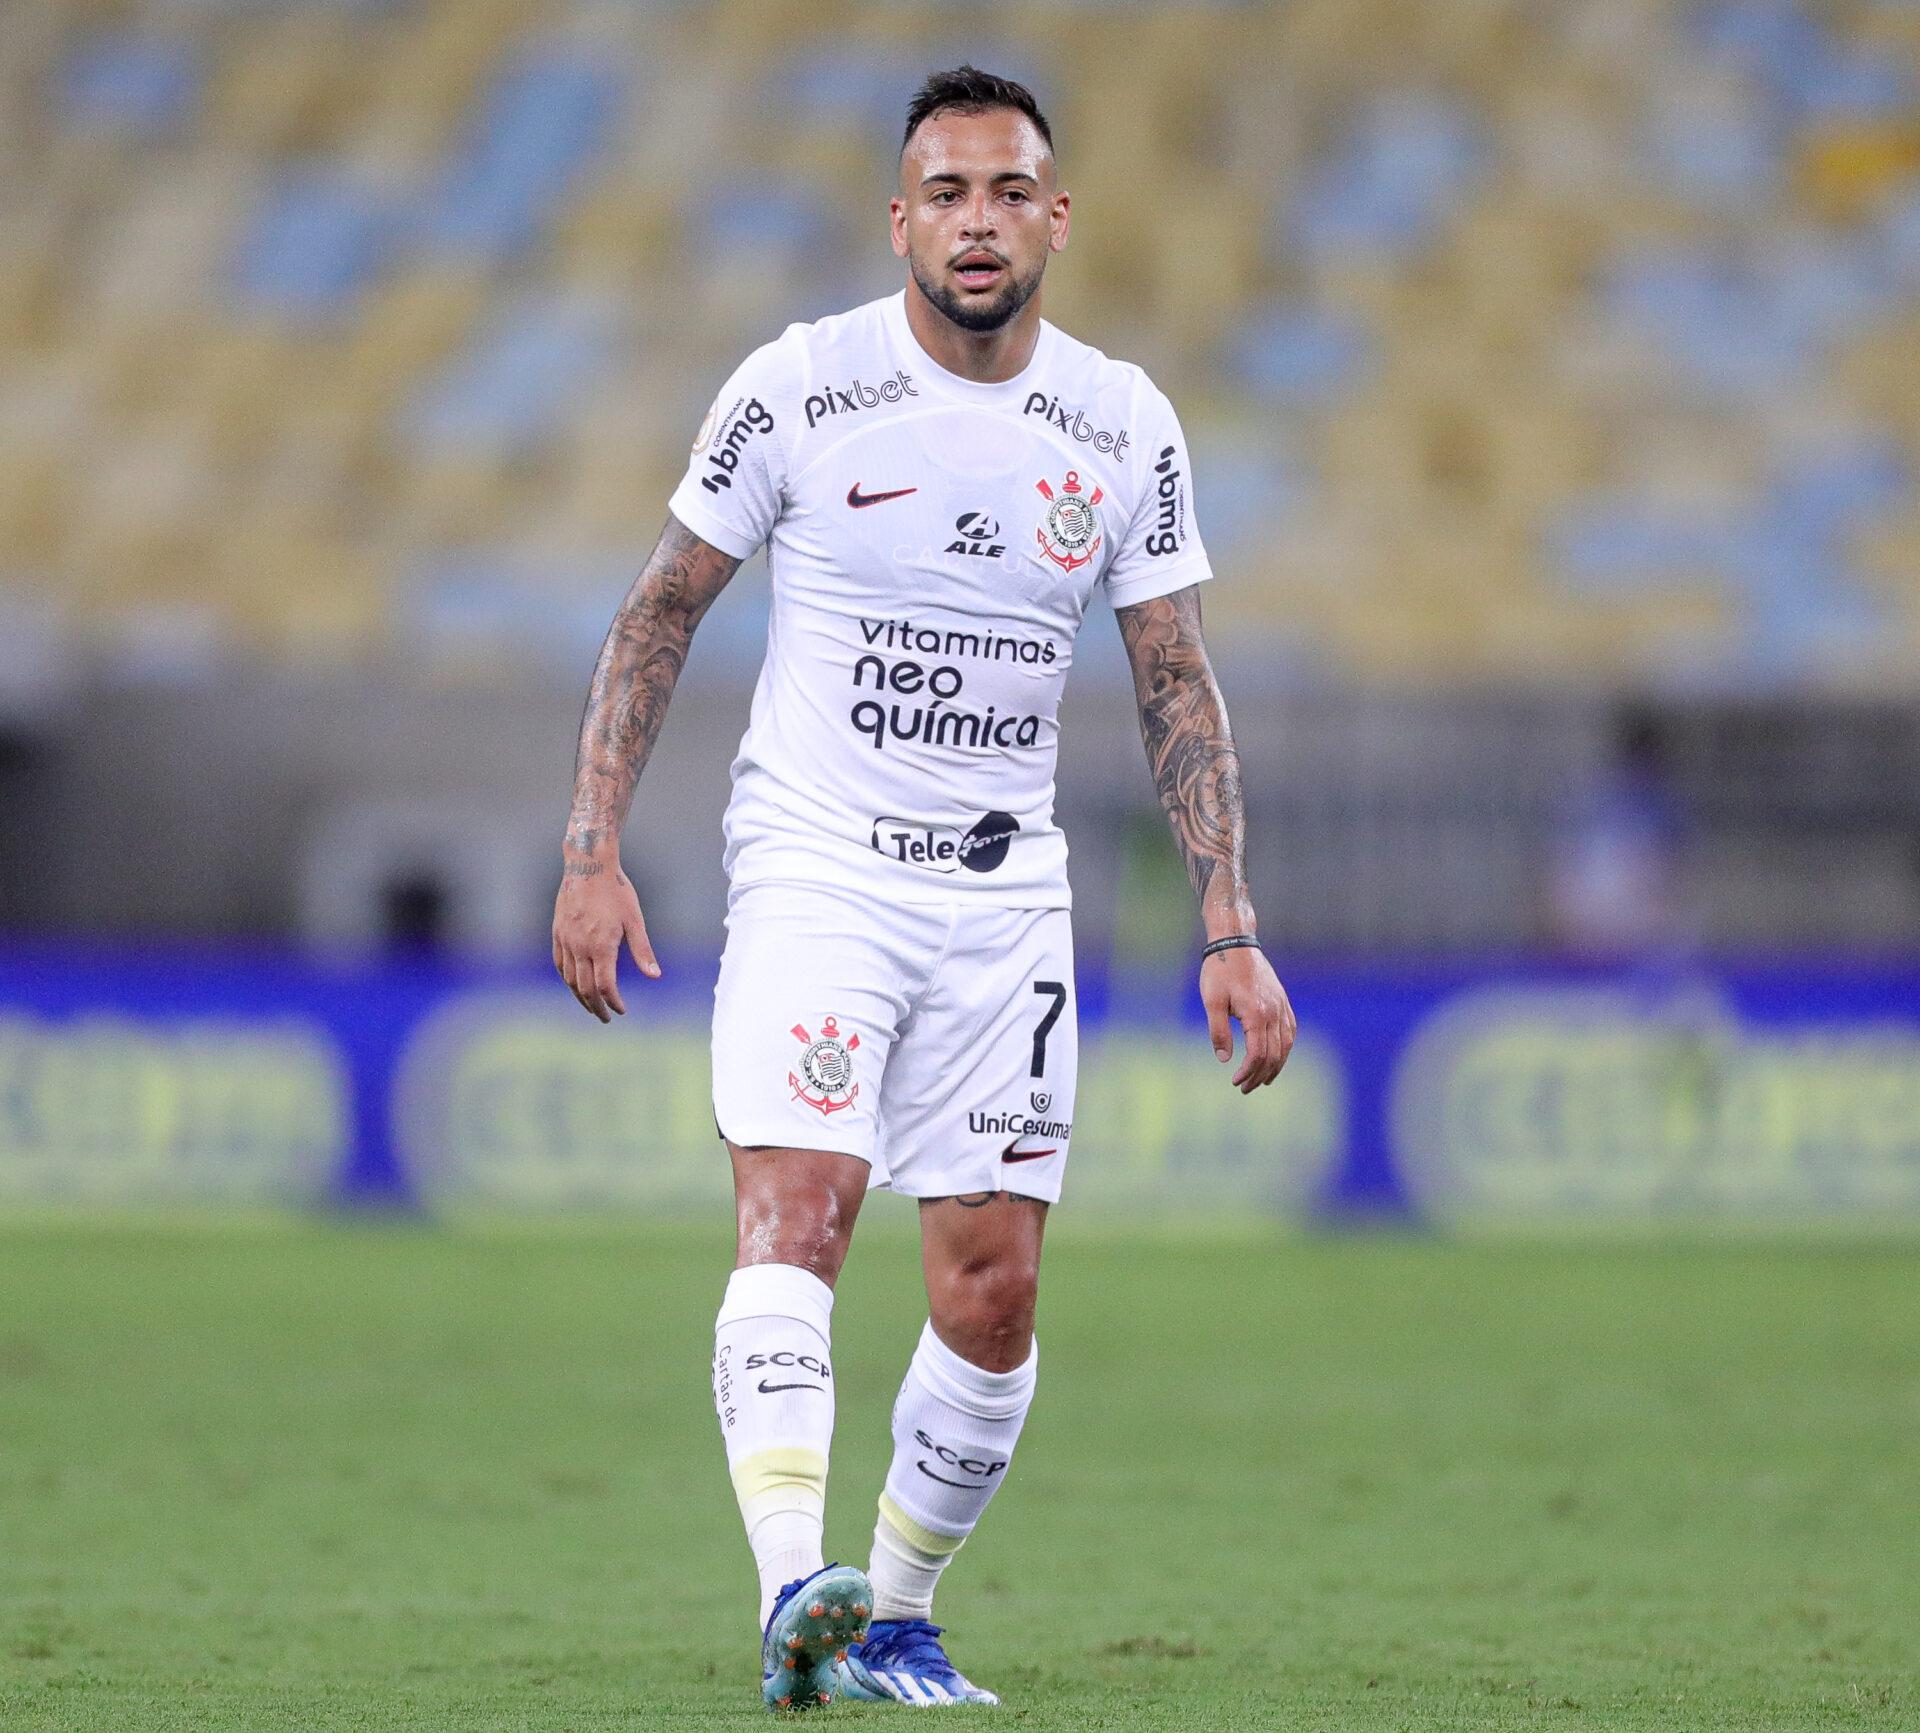 Maycon pertence ao Shakhtar mas seguirá no Corinthians. Flamengo fez proposta